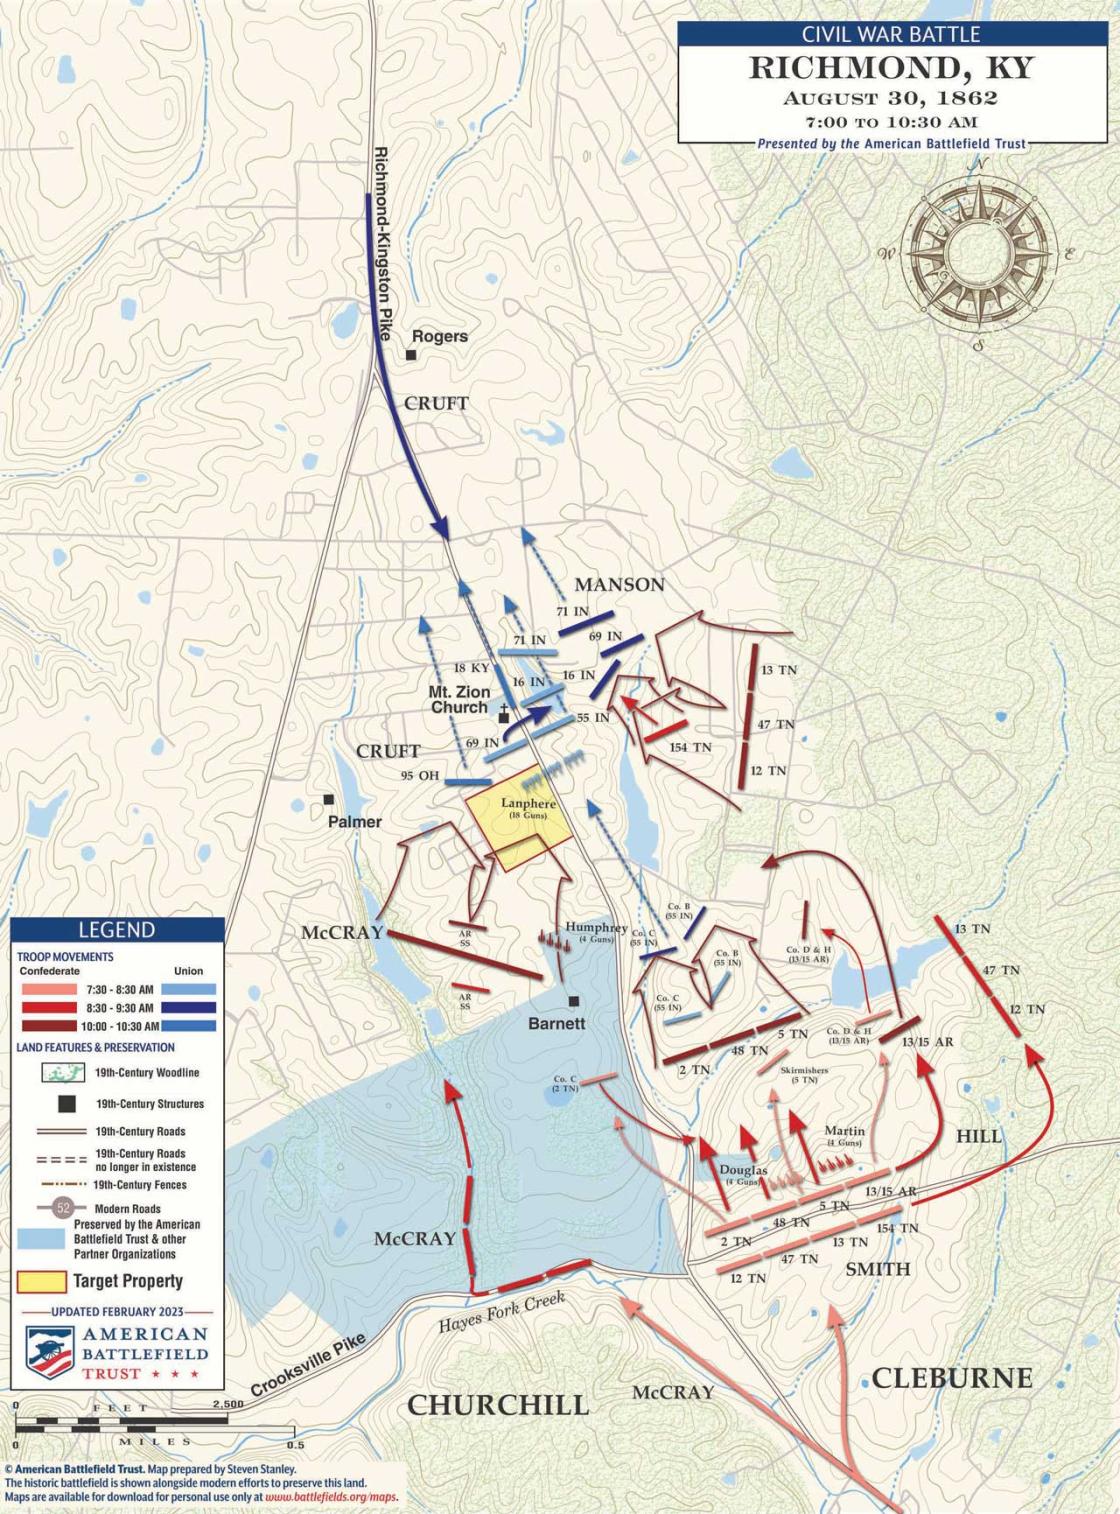 Richmond | Aug 29-30, 1862